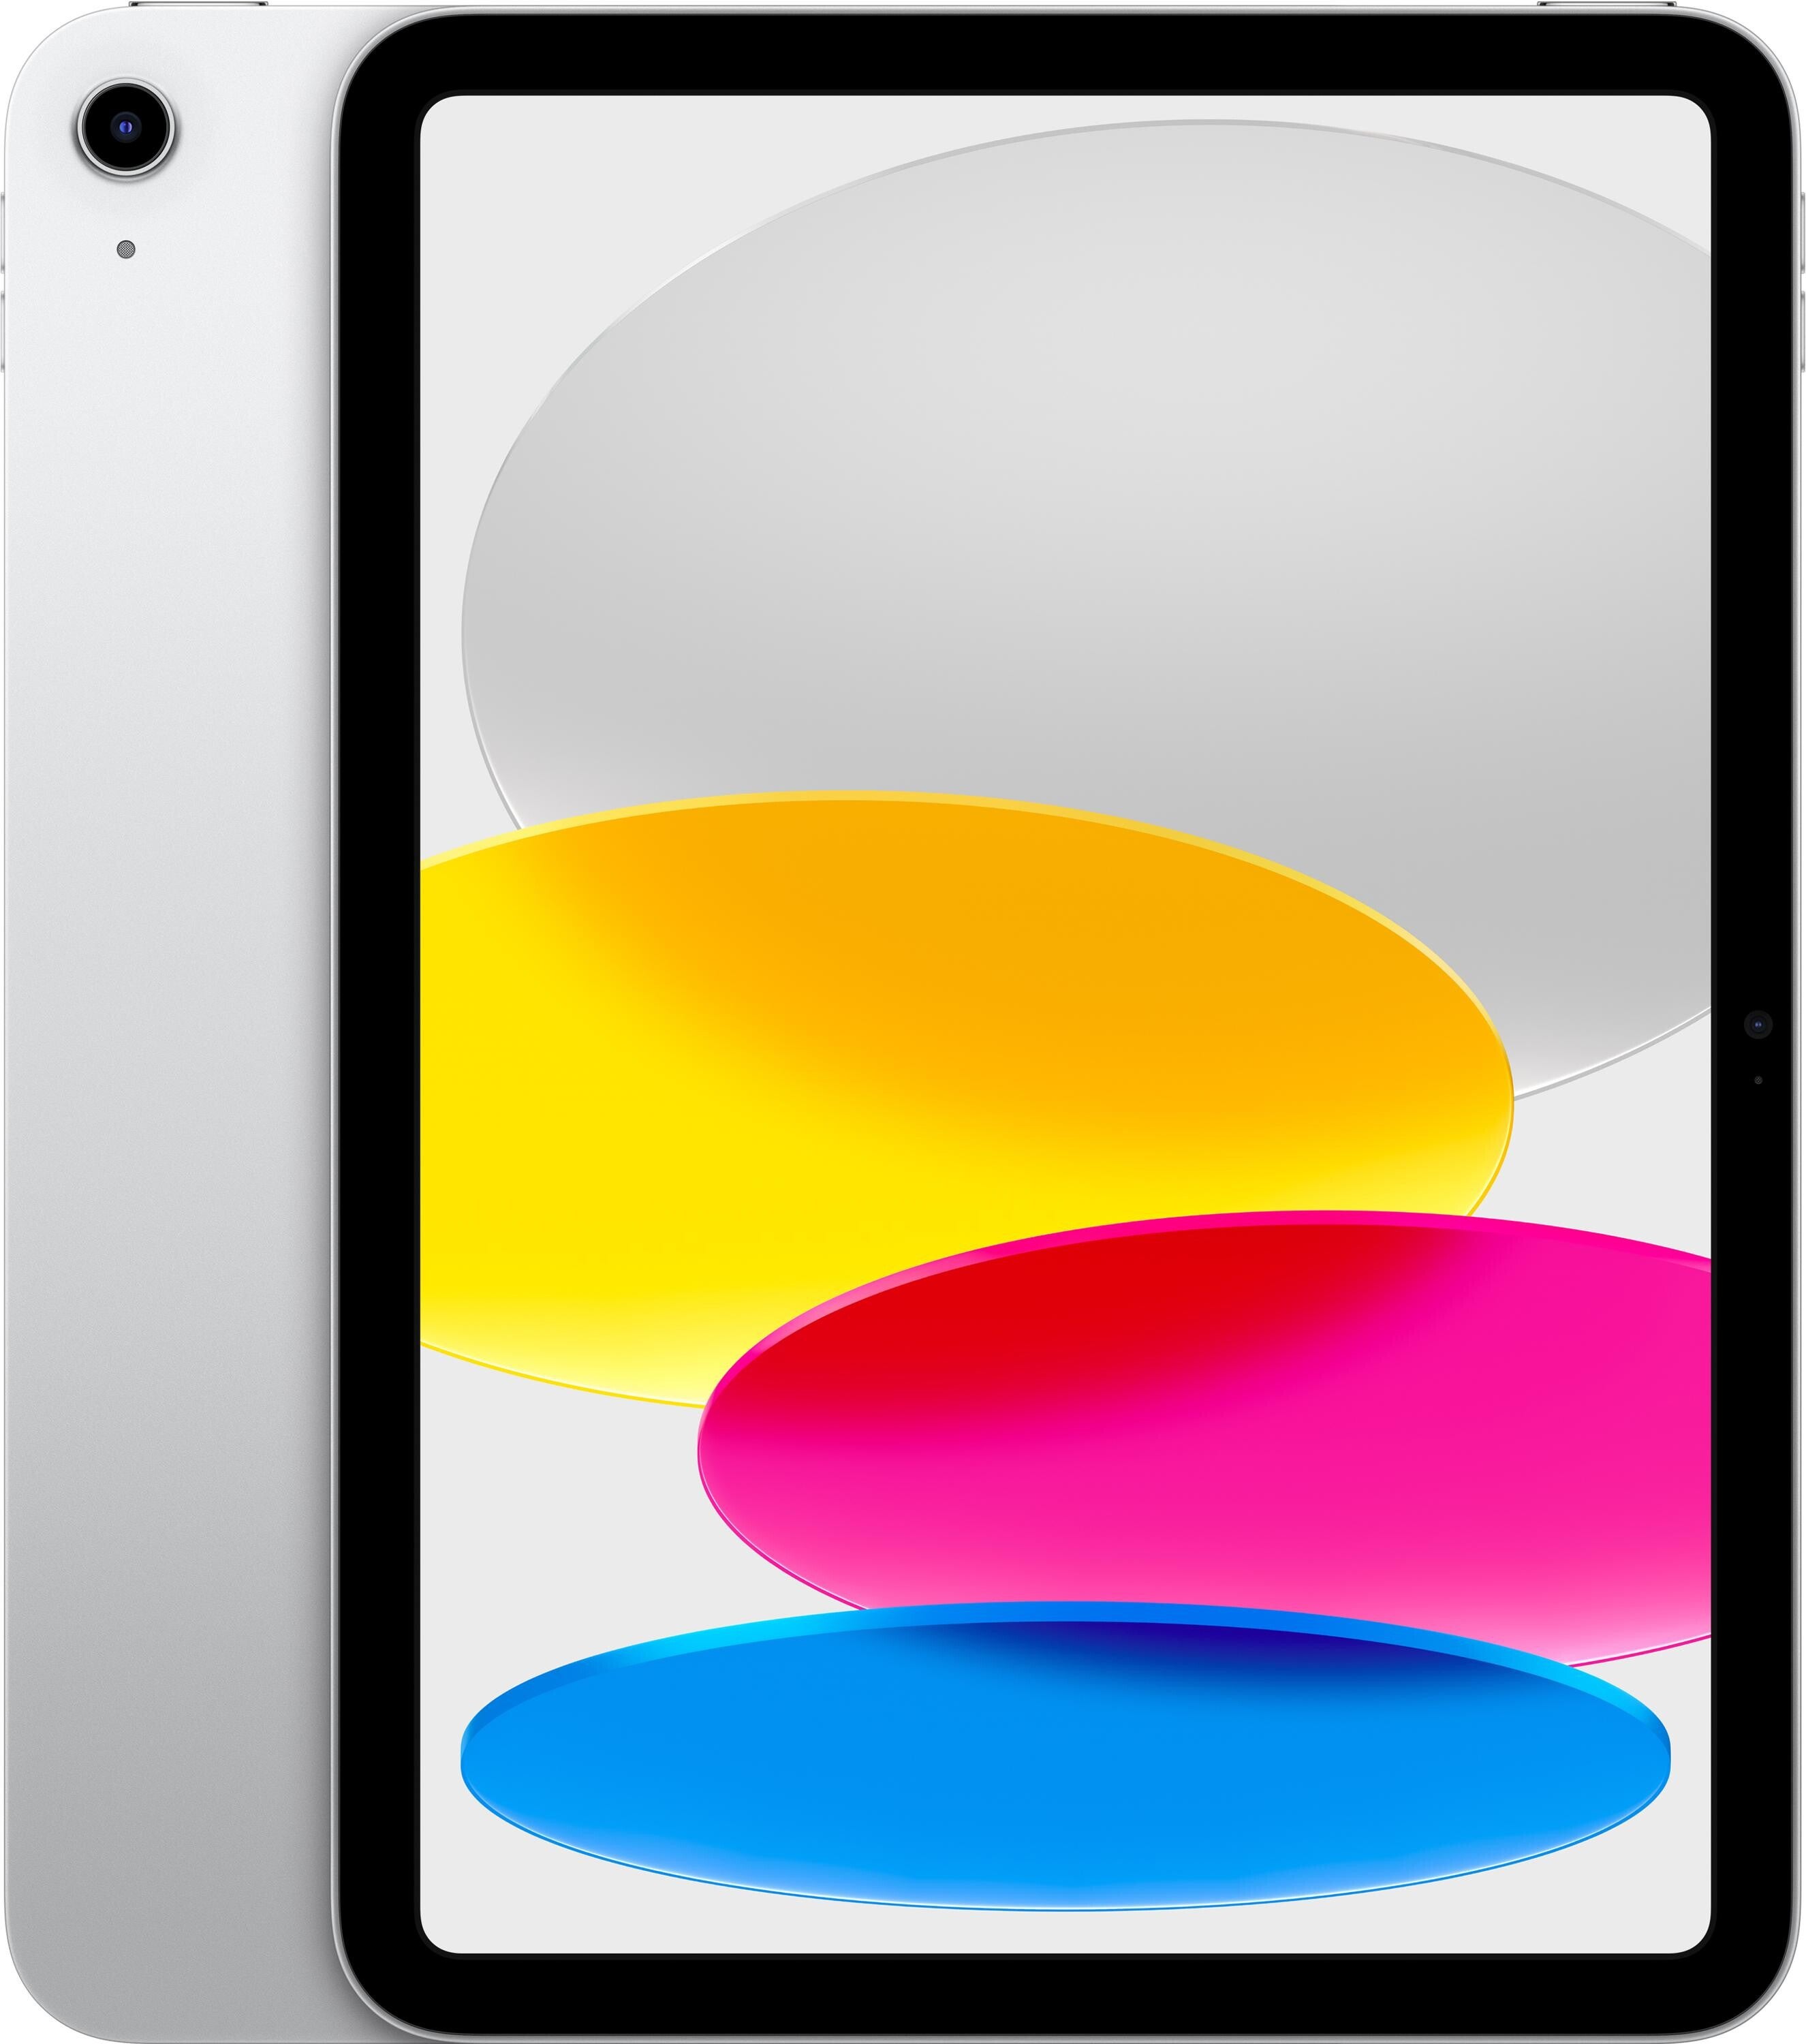 Apple iPad mini Wi-Fi 64GB - Pink | Sweetwater